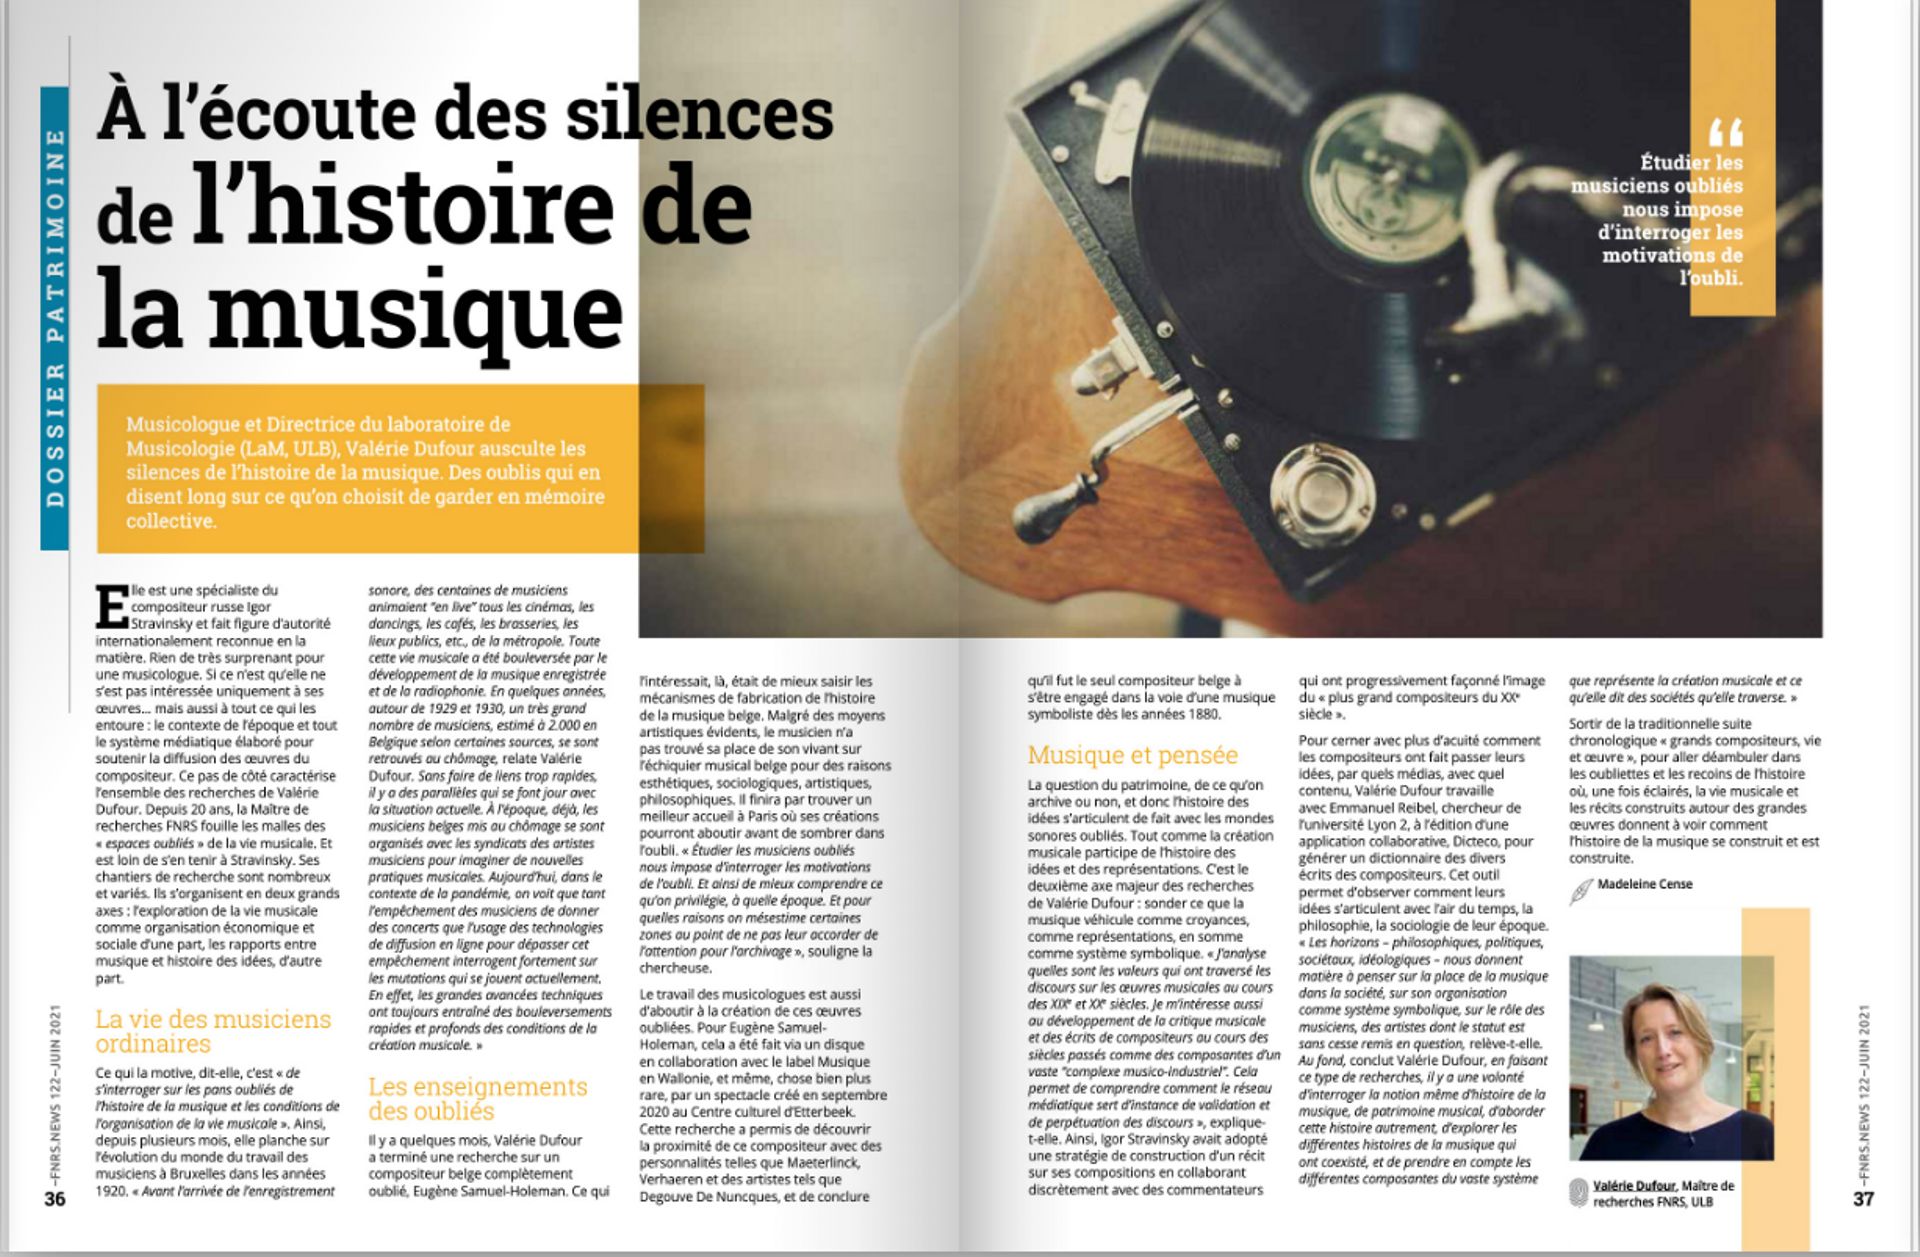 Article “ A l’écoute des silences de l’histoire de la musique”, FNRS News (numéro 122, juin 2021, p. 36-37)